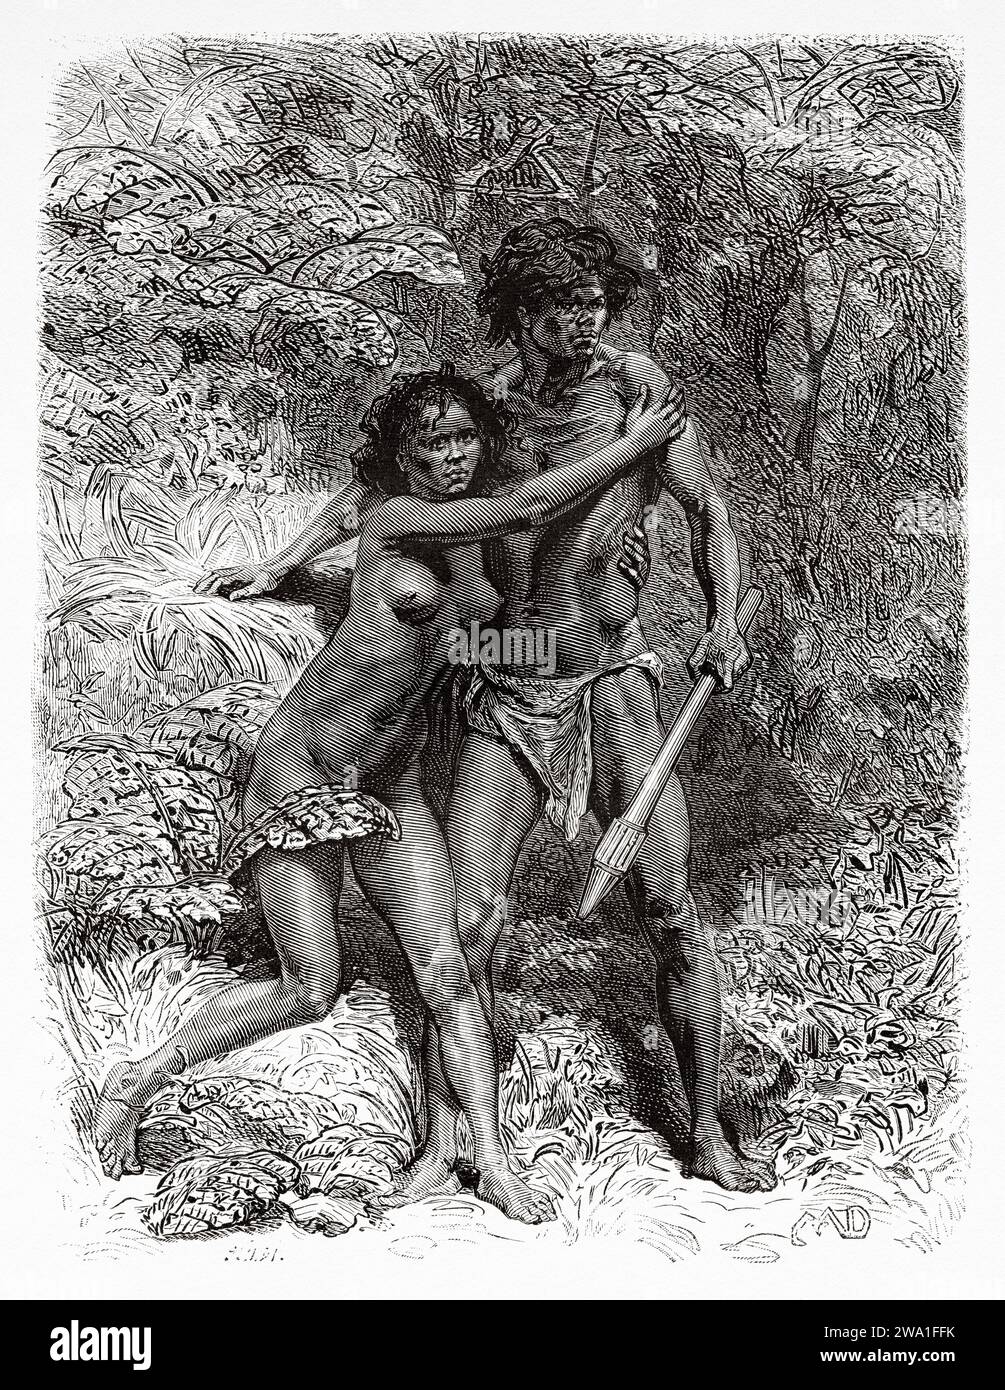 Uomo e donna aborigeni nativi australiani. Queensland, Australia. Sei mesi in Australia 1878 da Desire Charnay (1828 - 1915) incisione del vecchio XIX secolo da le Tour du Monde 1880 Foto Stock